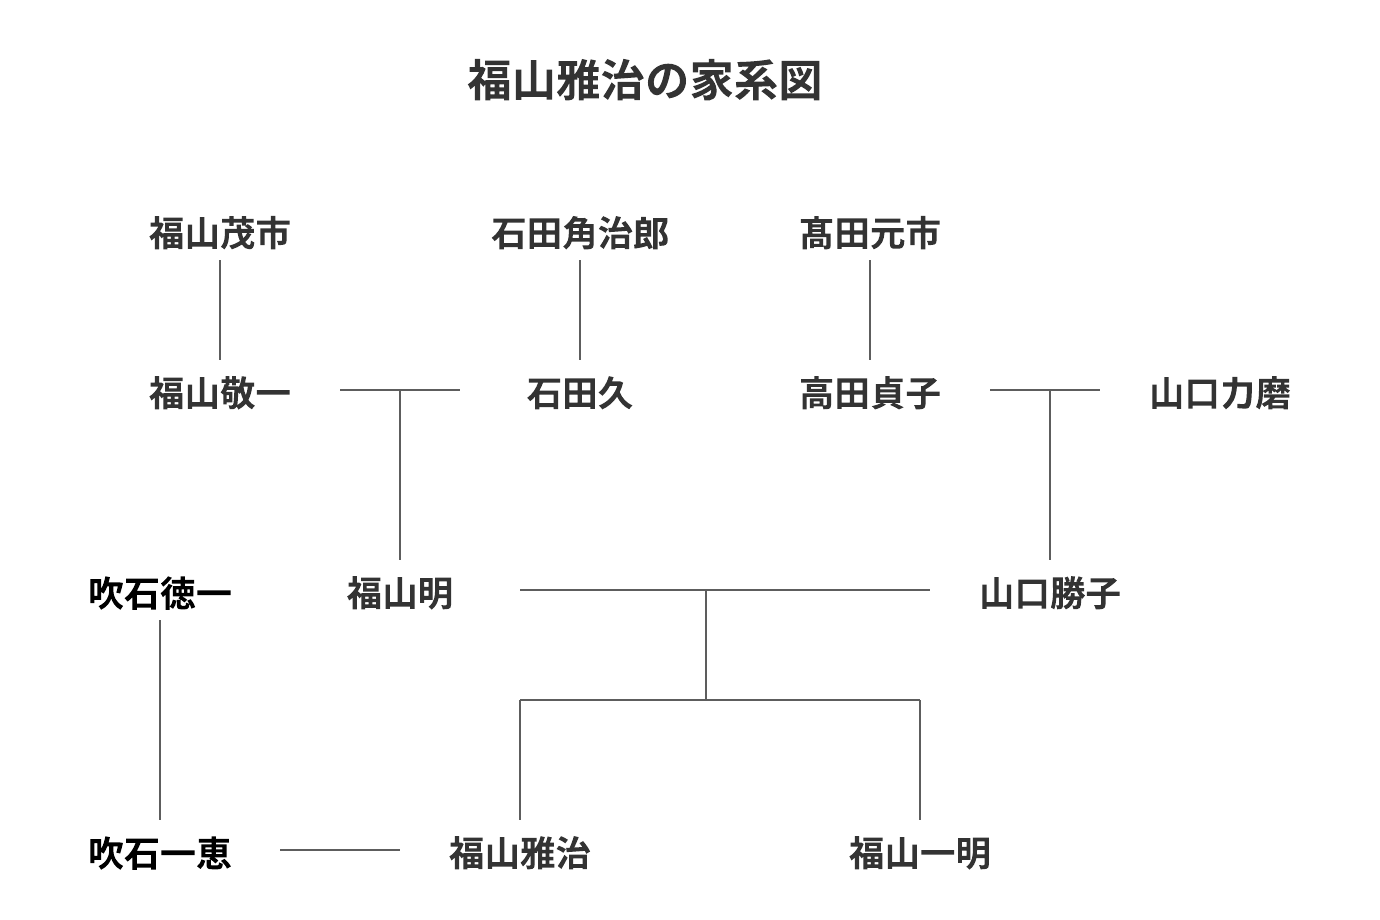 福山雅治の家系図